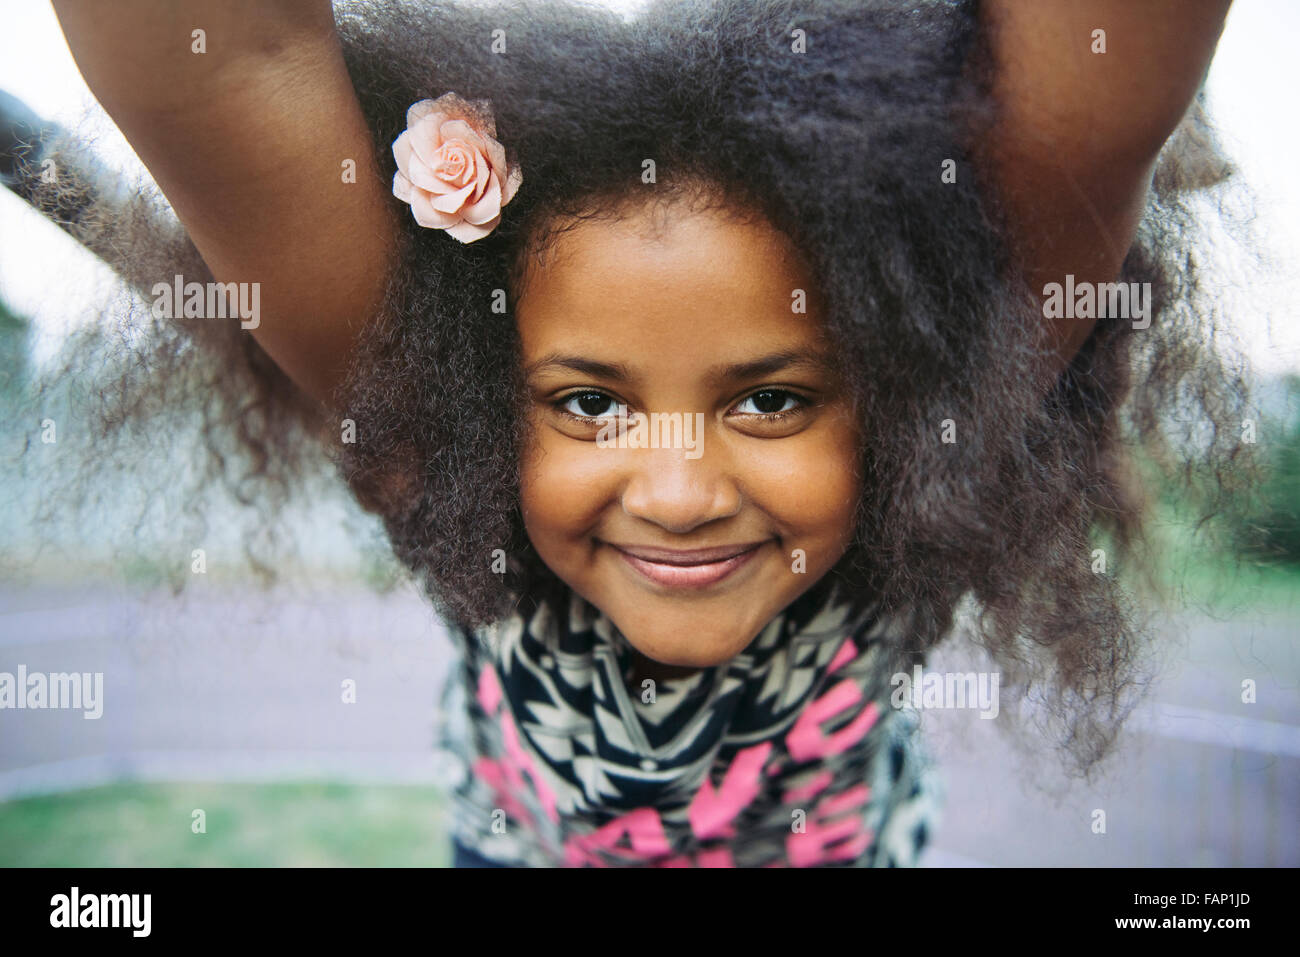 Mulatto child immagini e fotografie stock ad alta risoluzione - Alamy